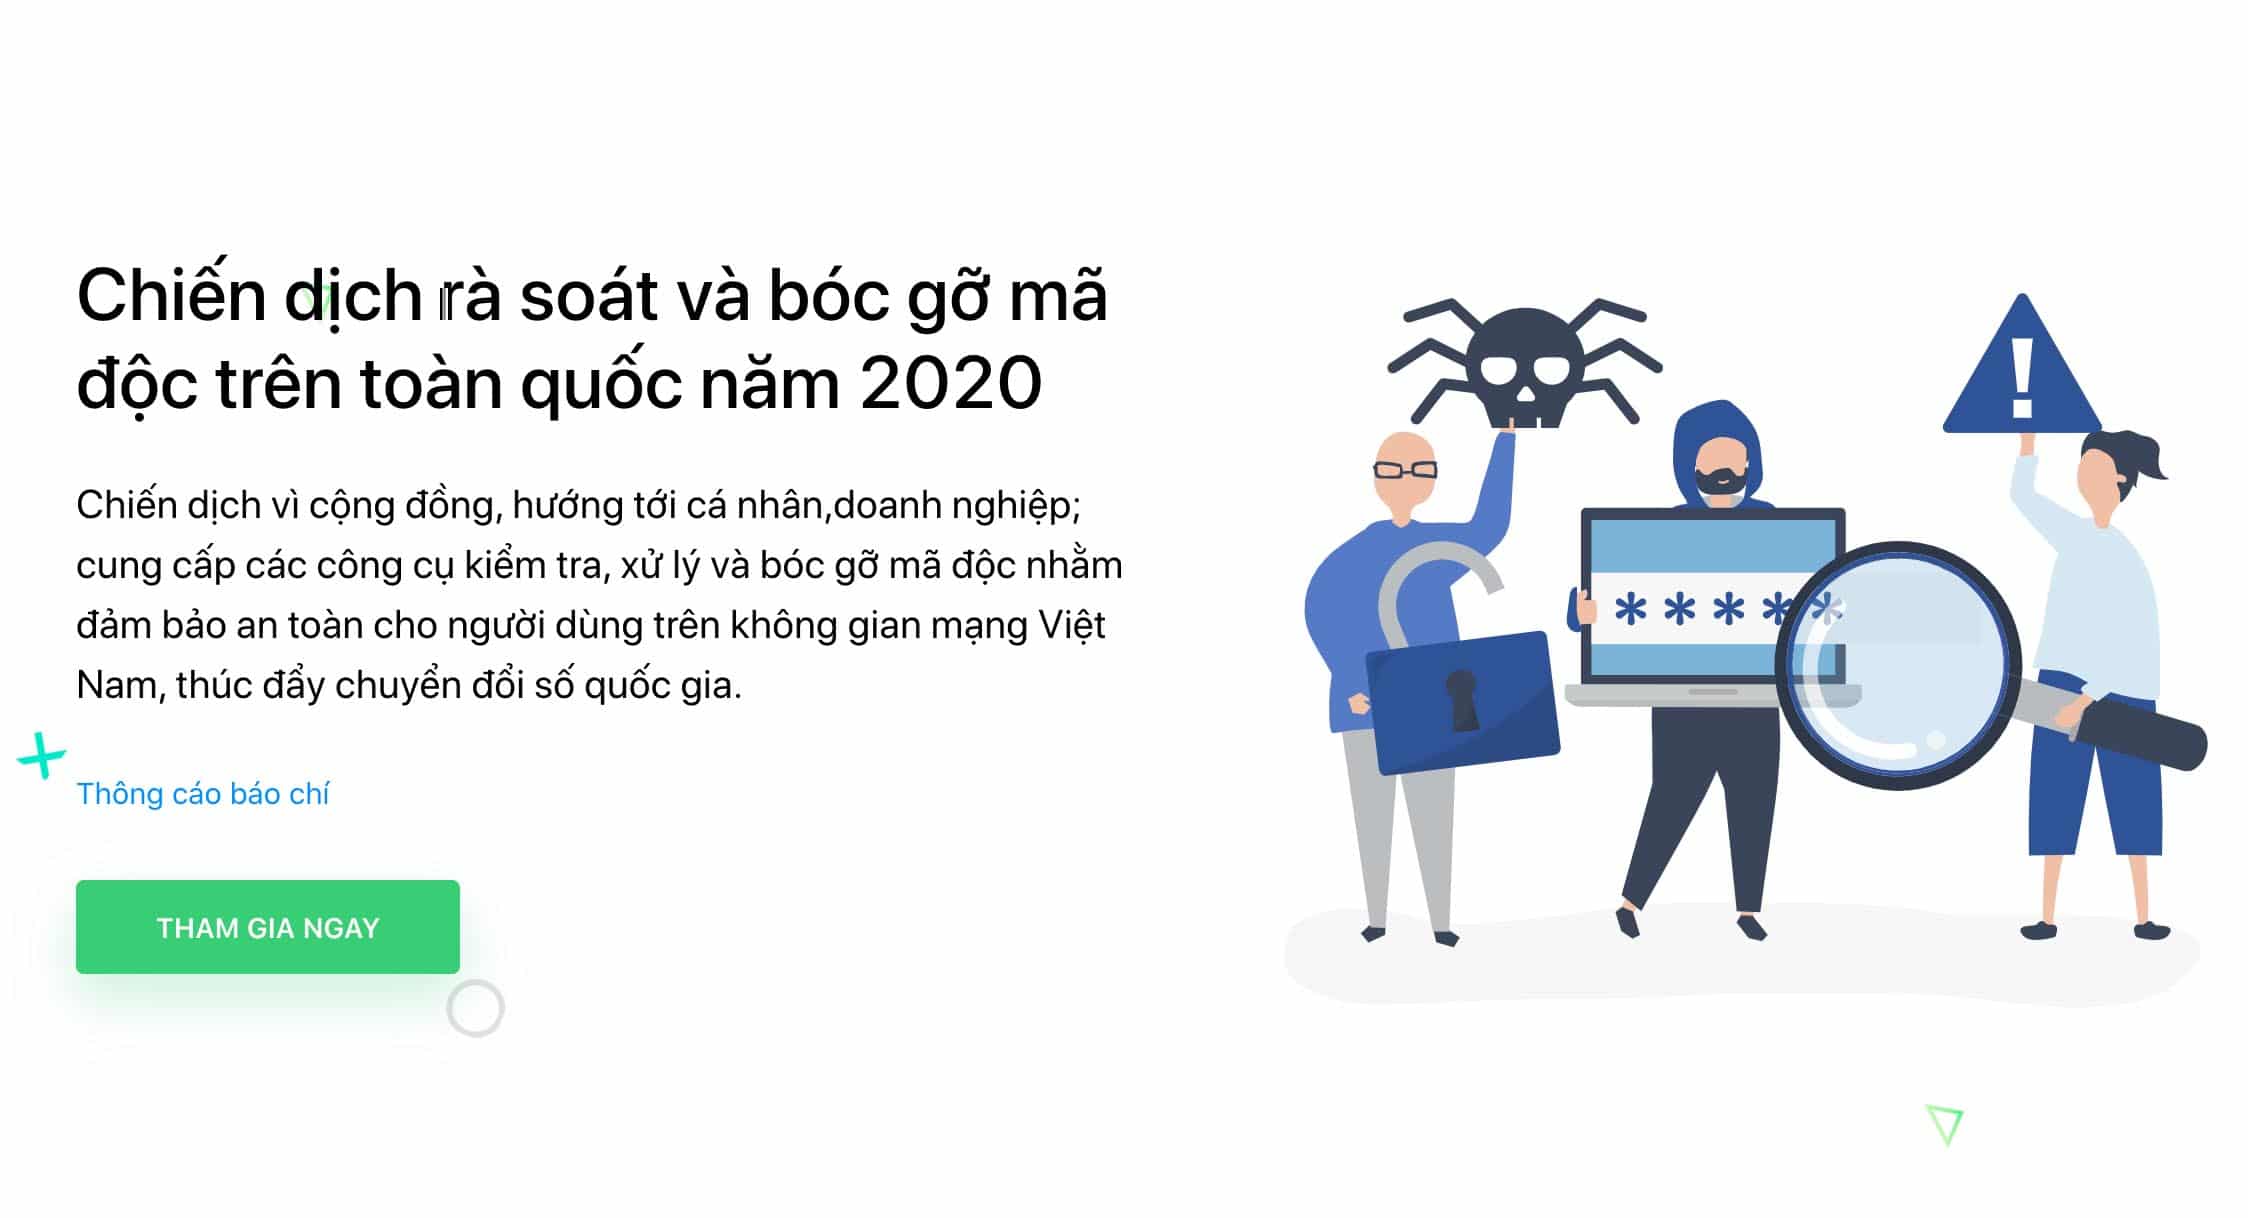 Kaspersky hợp tác trong chiến dịch “Rà soát và bóc gỡ mã độc trên toàn quốc năm 2020” của Bộ Thông tin và Truyền thông